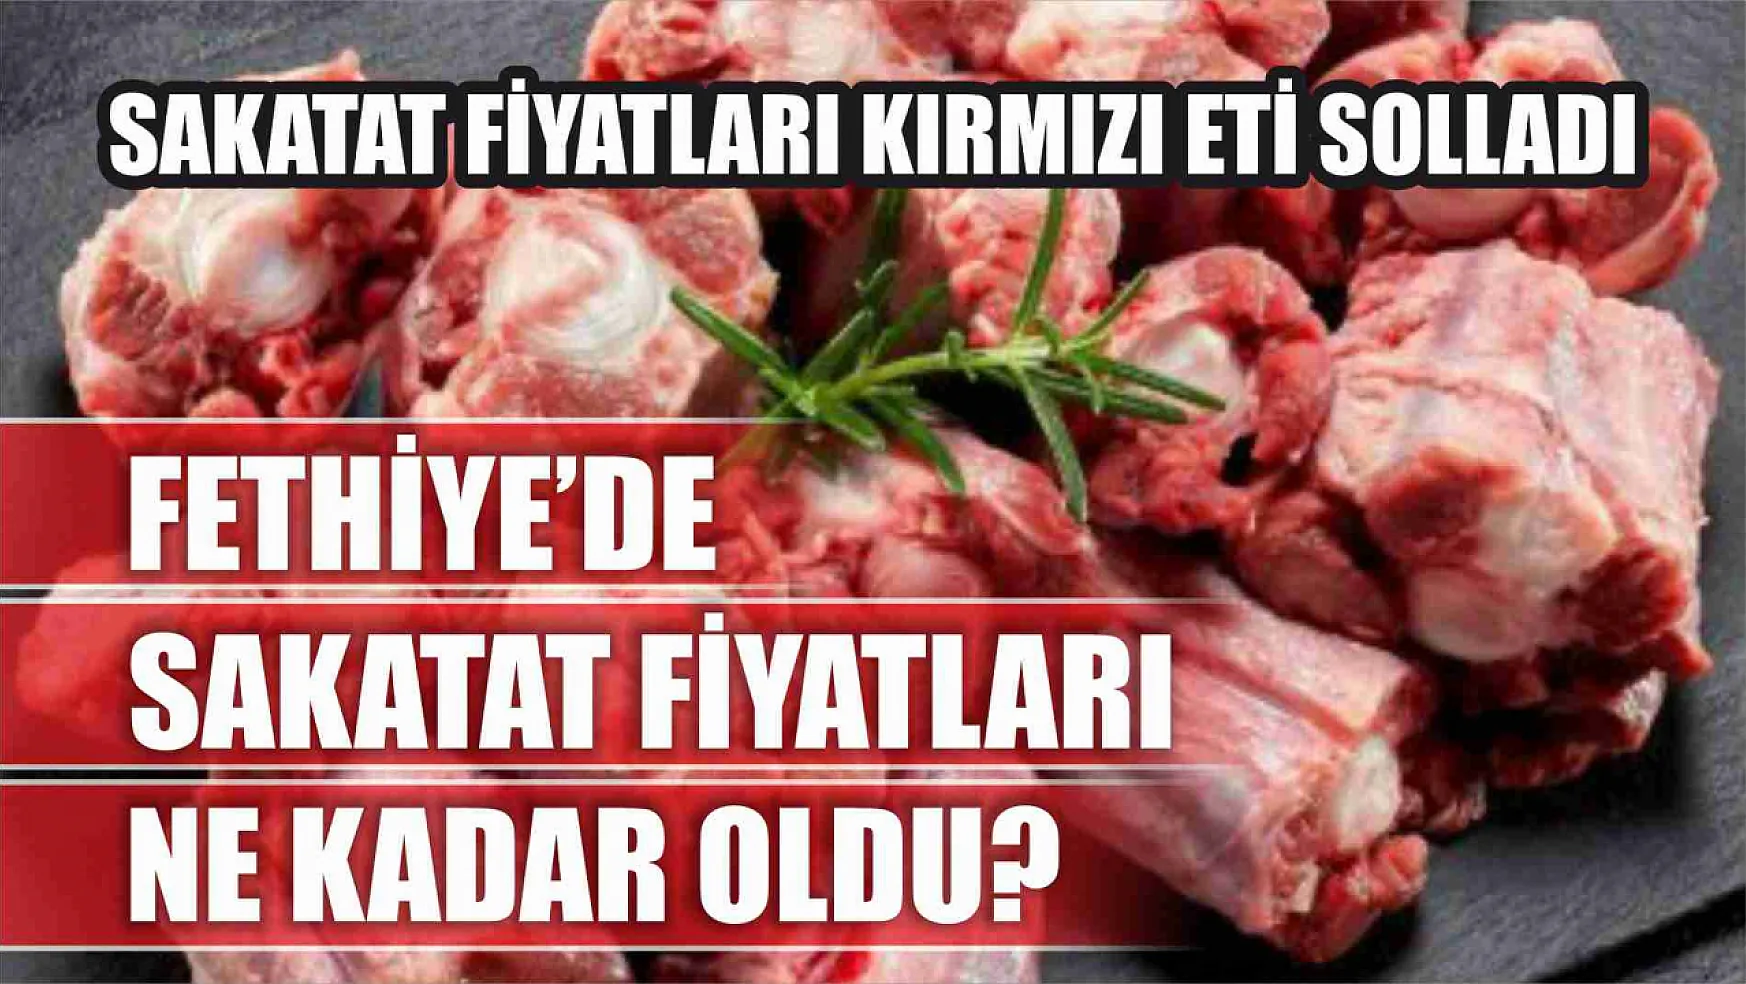 Sakatat fiyatları kırmızı eti solladı, Fethiye'de sakatat fiyatları ne kadar oldu?